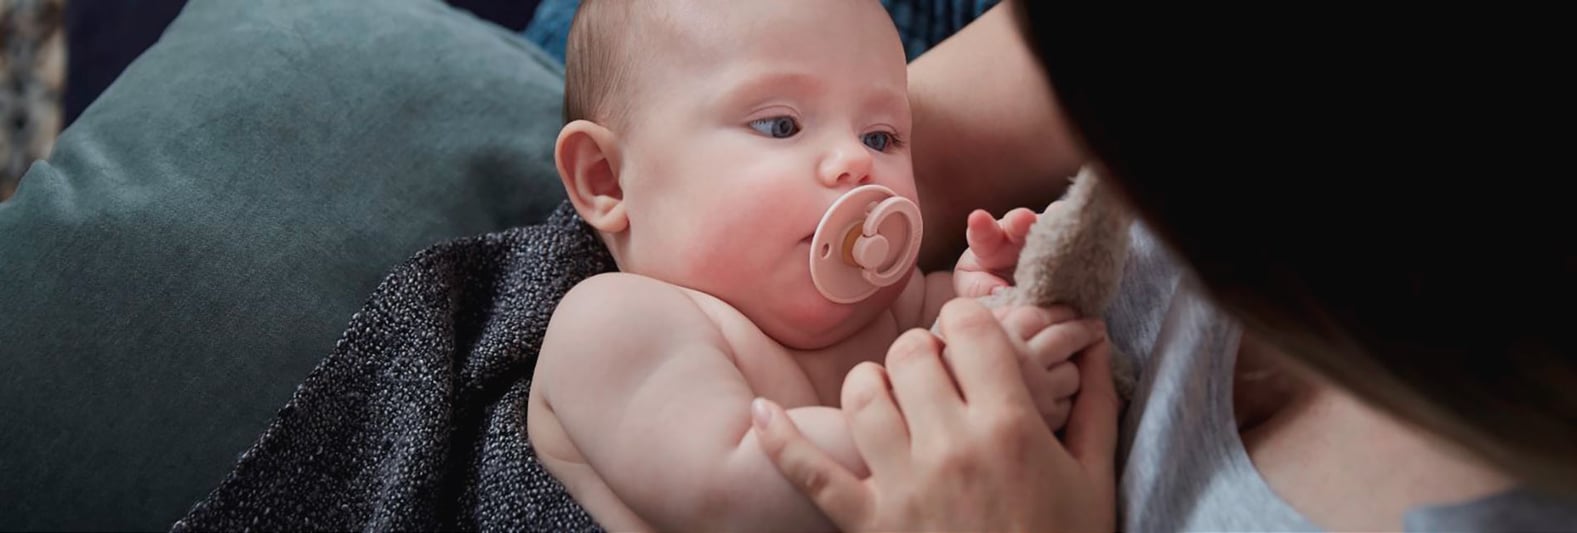 Mãe com bebé Cryos após tratamento de fertilidade com esperma de doador de alta qualidade